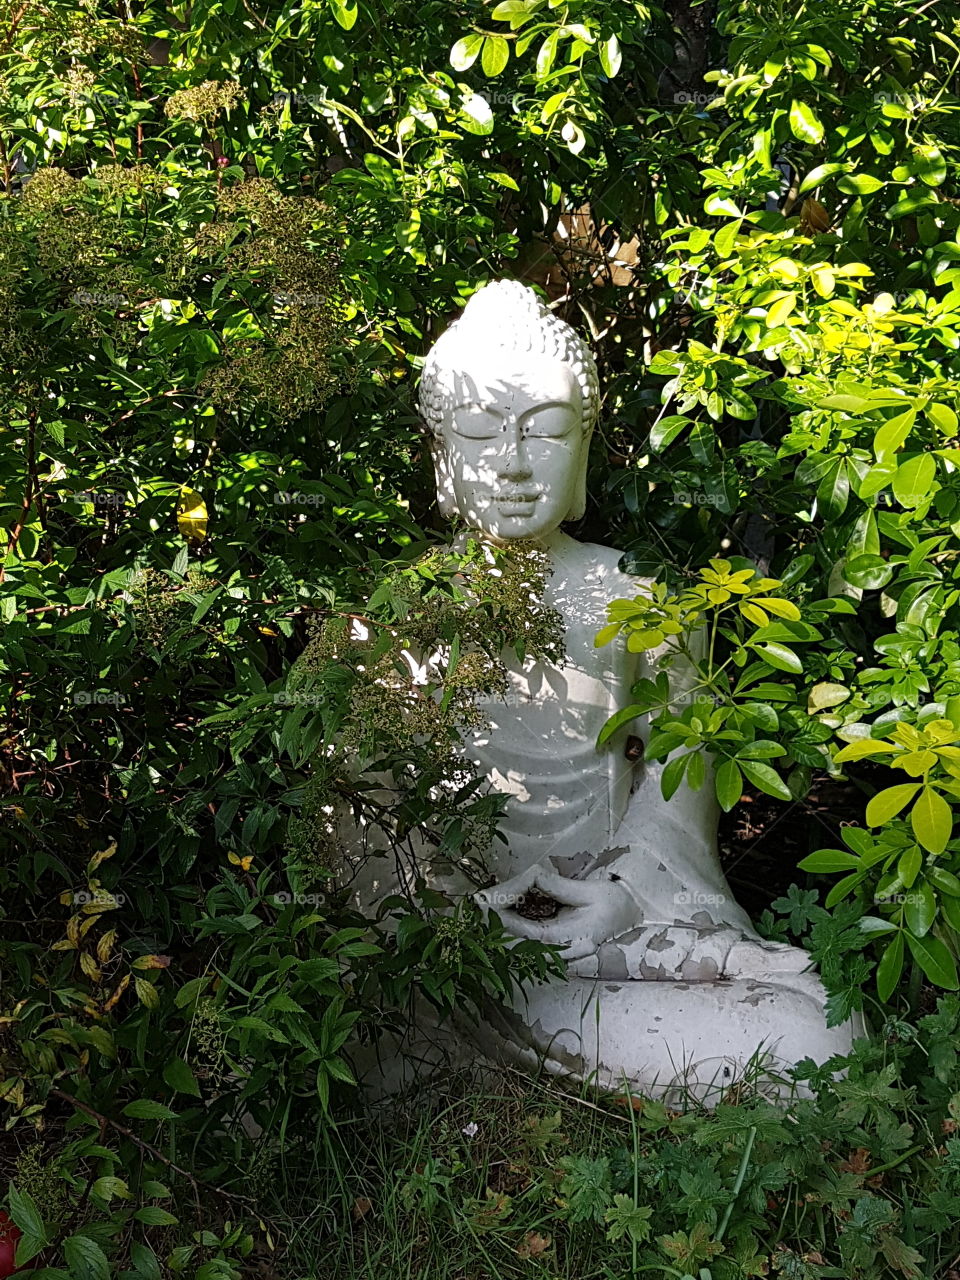 Budda statue amongst foliage